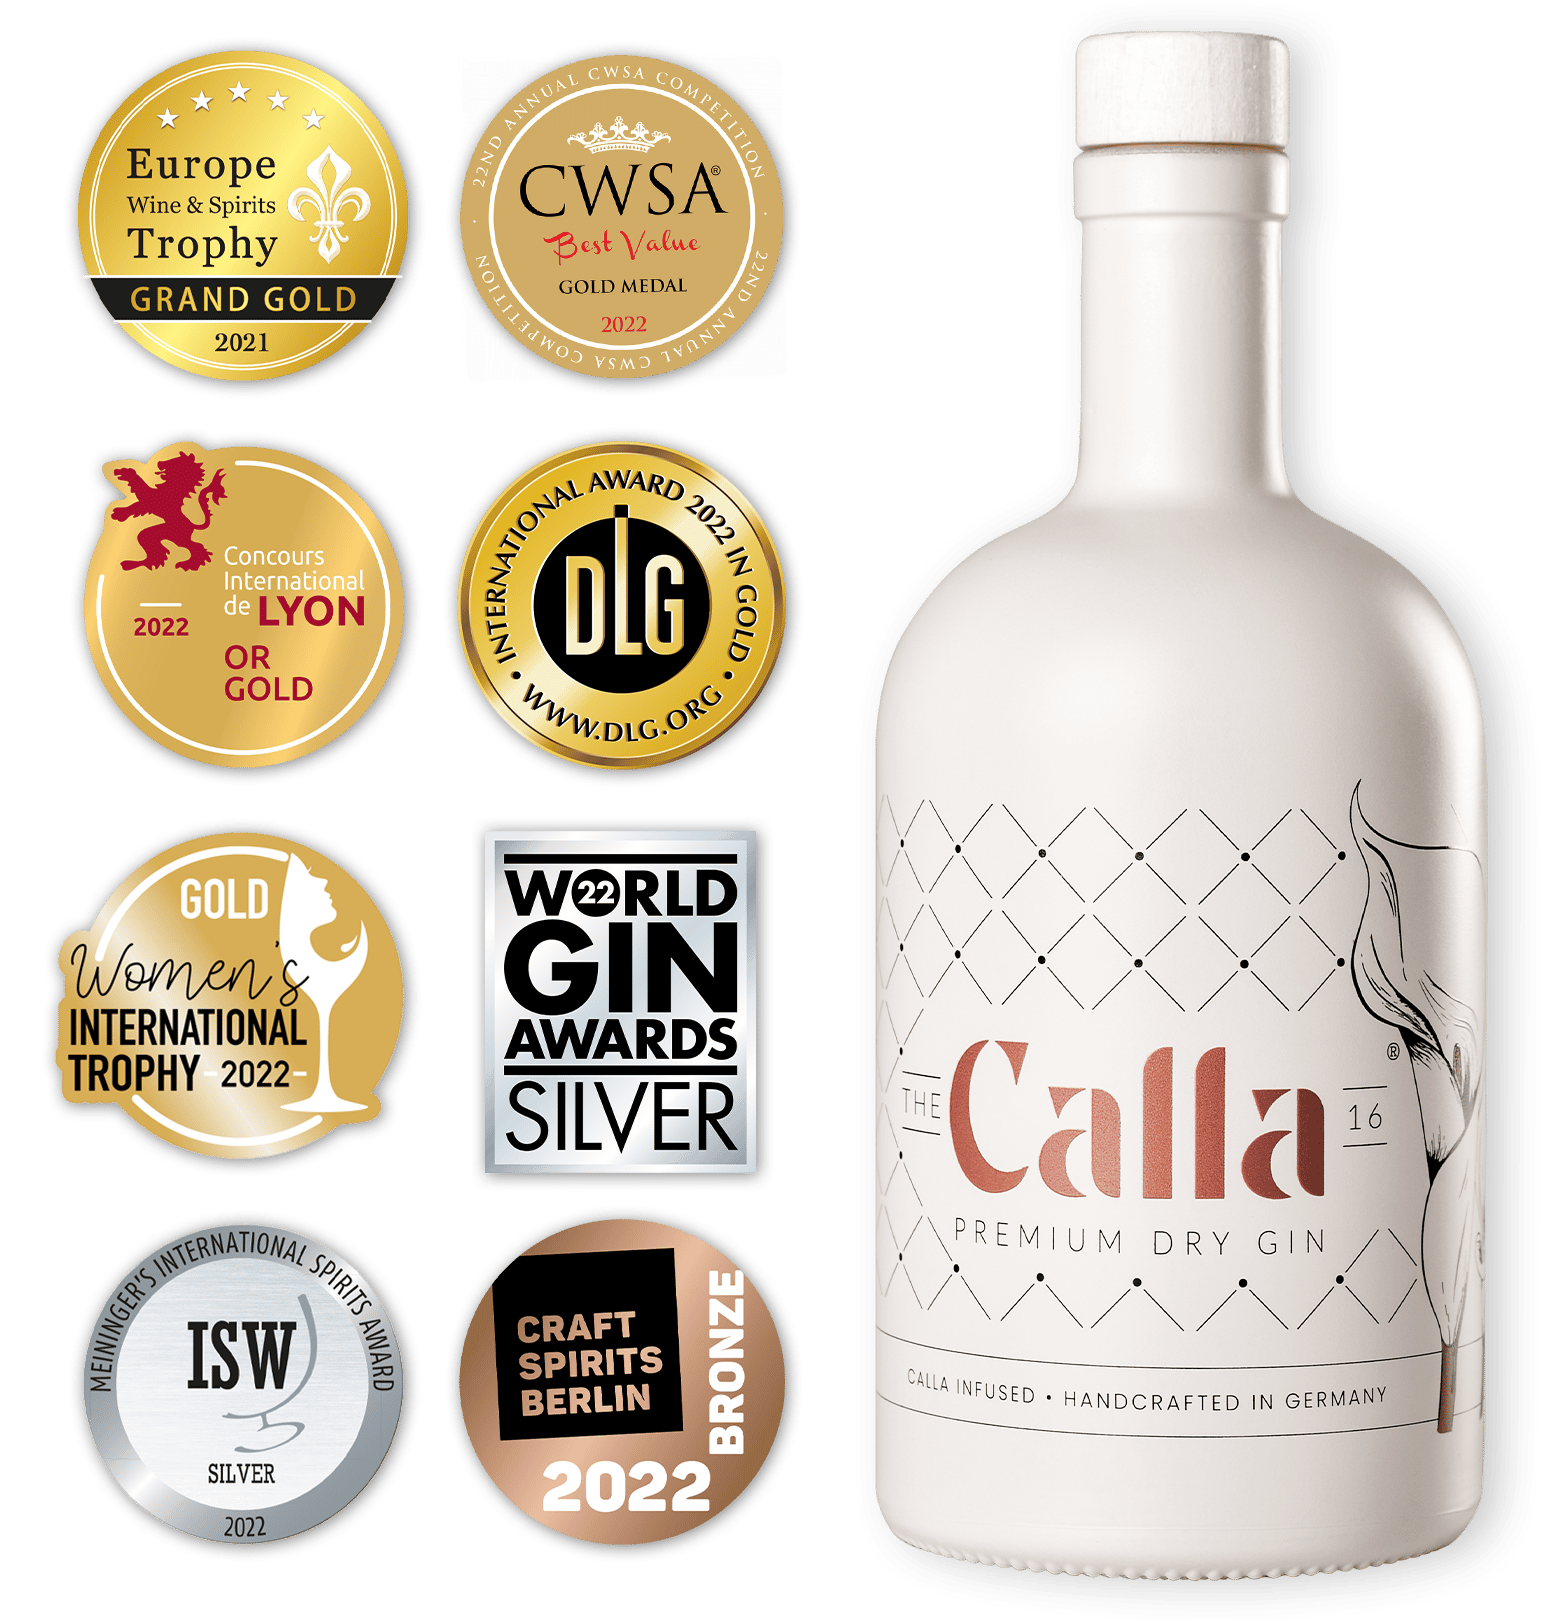 The Calla 16 Premium Dry Gin